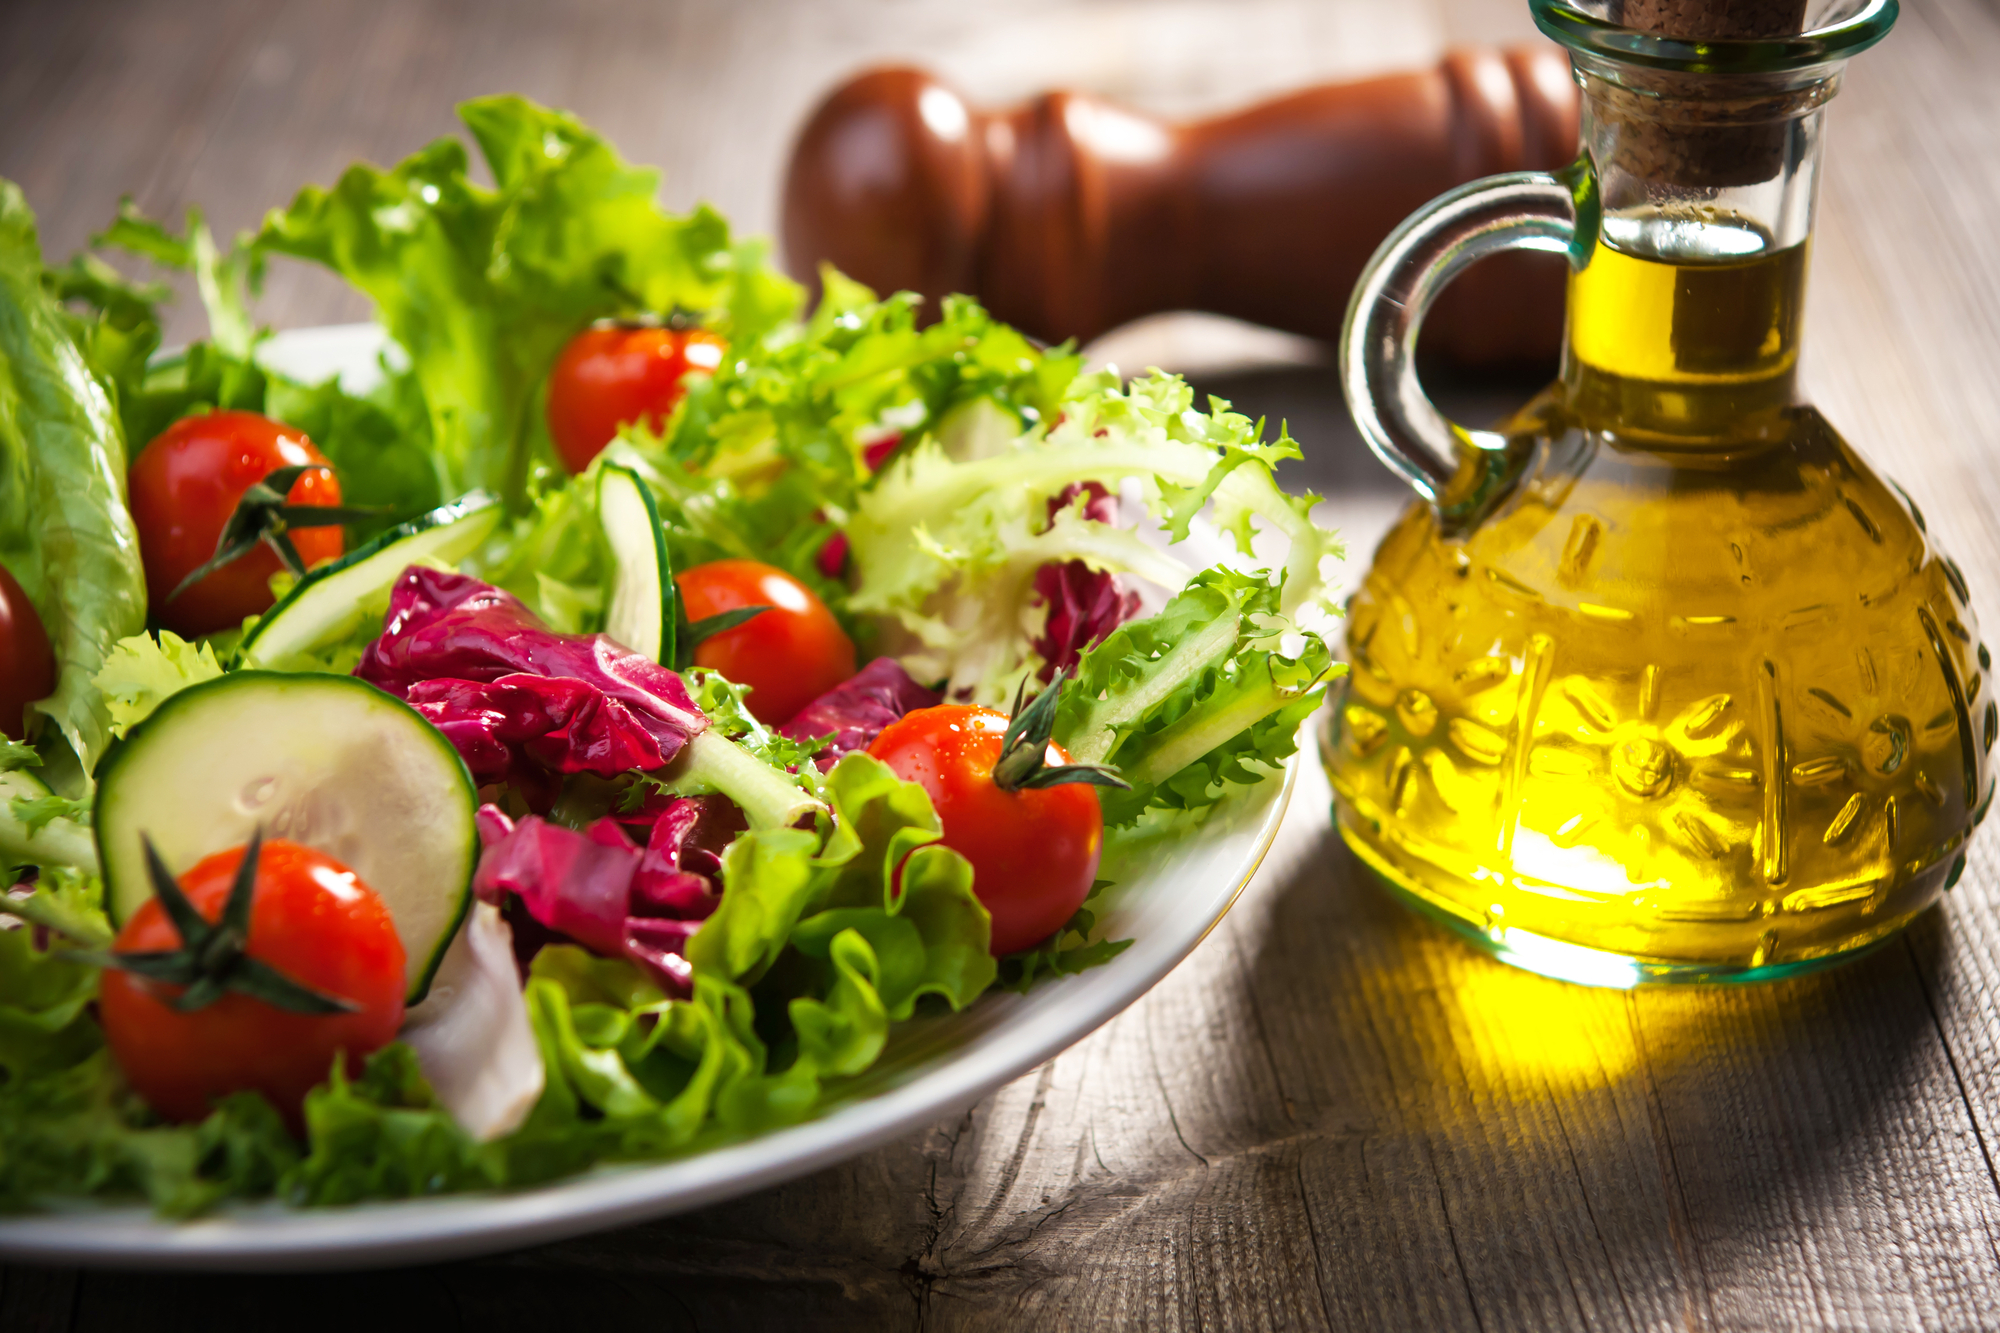 Заправка для салатов на растительном. Салат с маслом растительным. Салат с оливковым маслом. Салат овощной с маслом. Растительное масло и овощи.